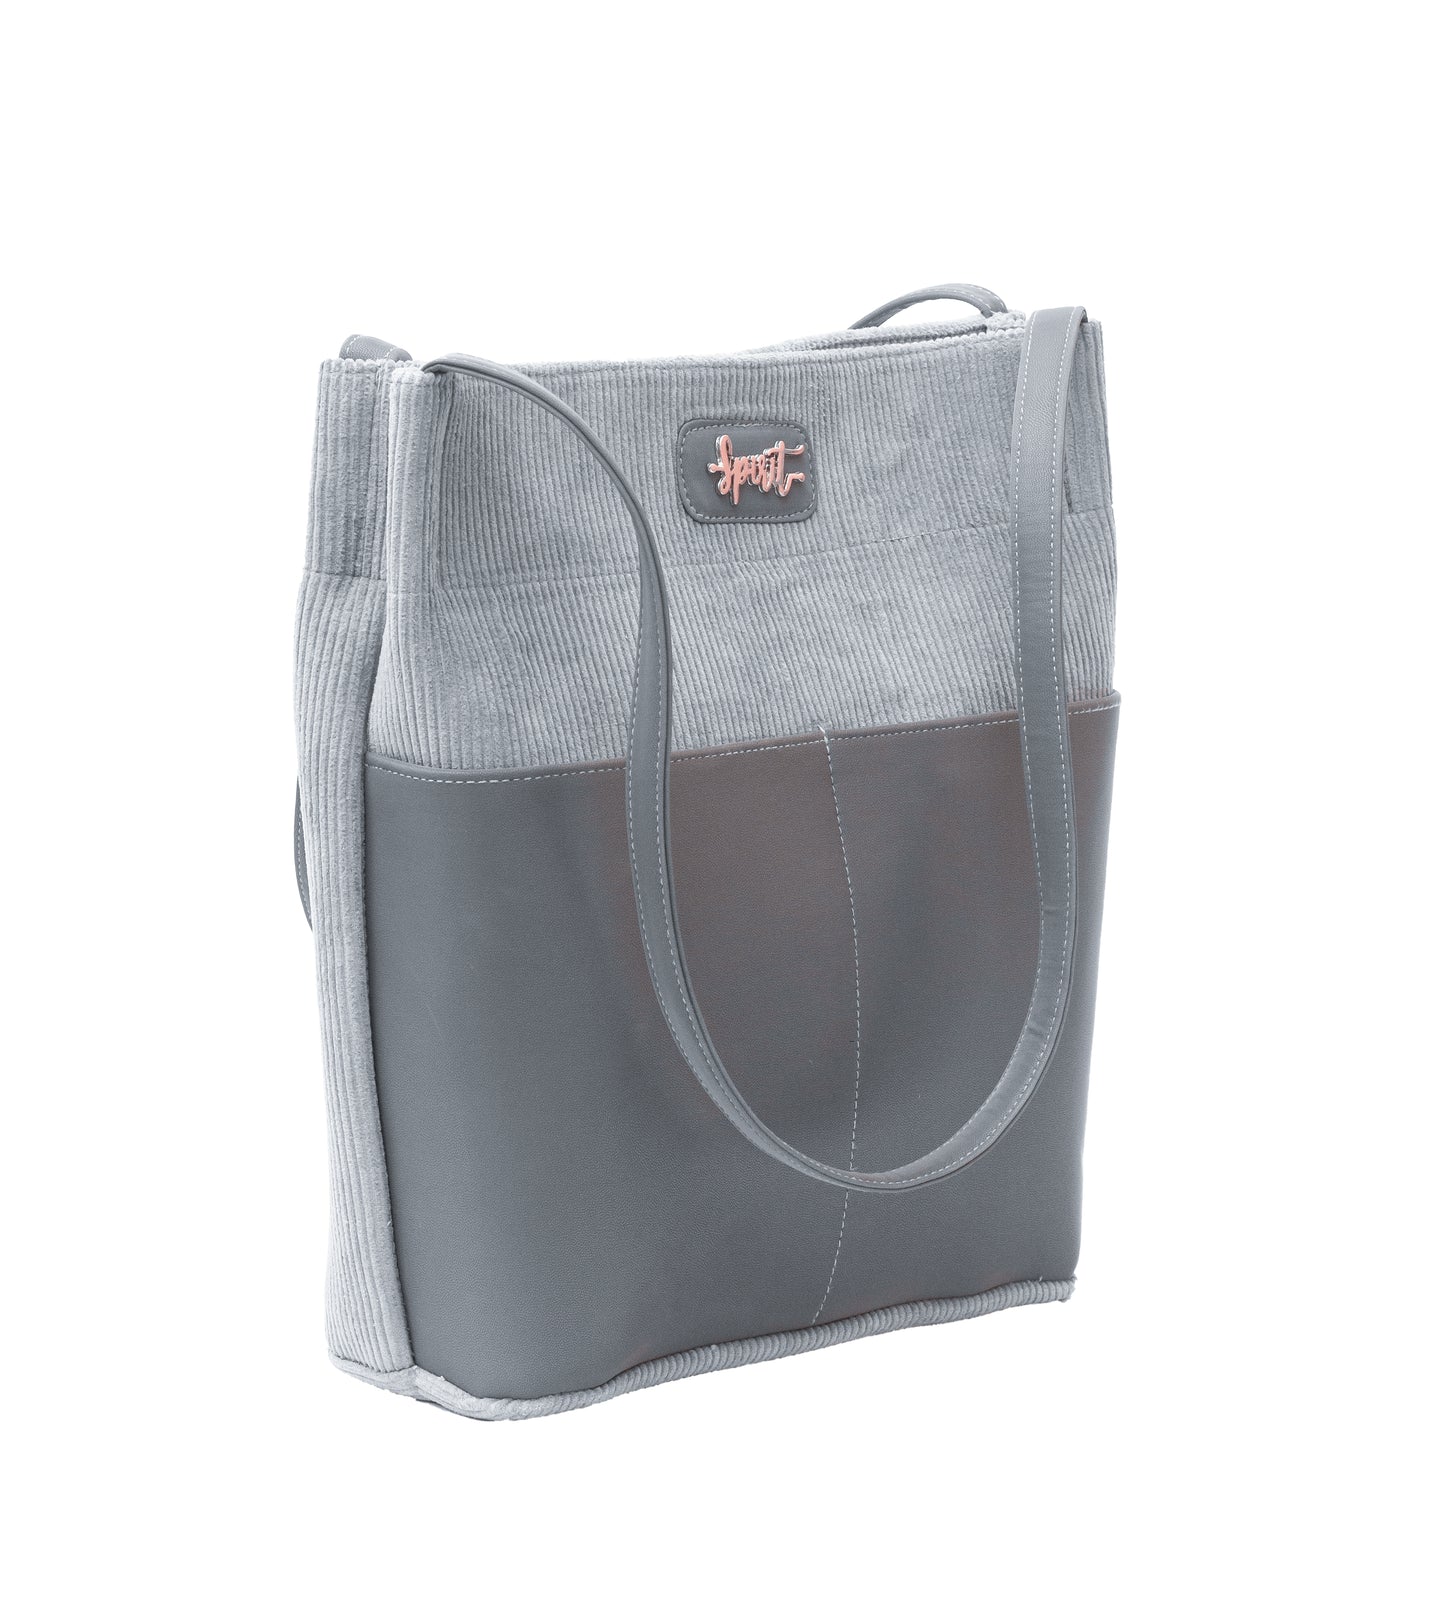 Urban Grey Tote Bag